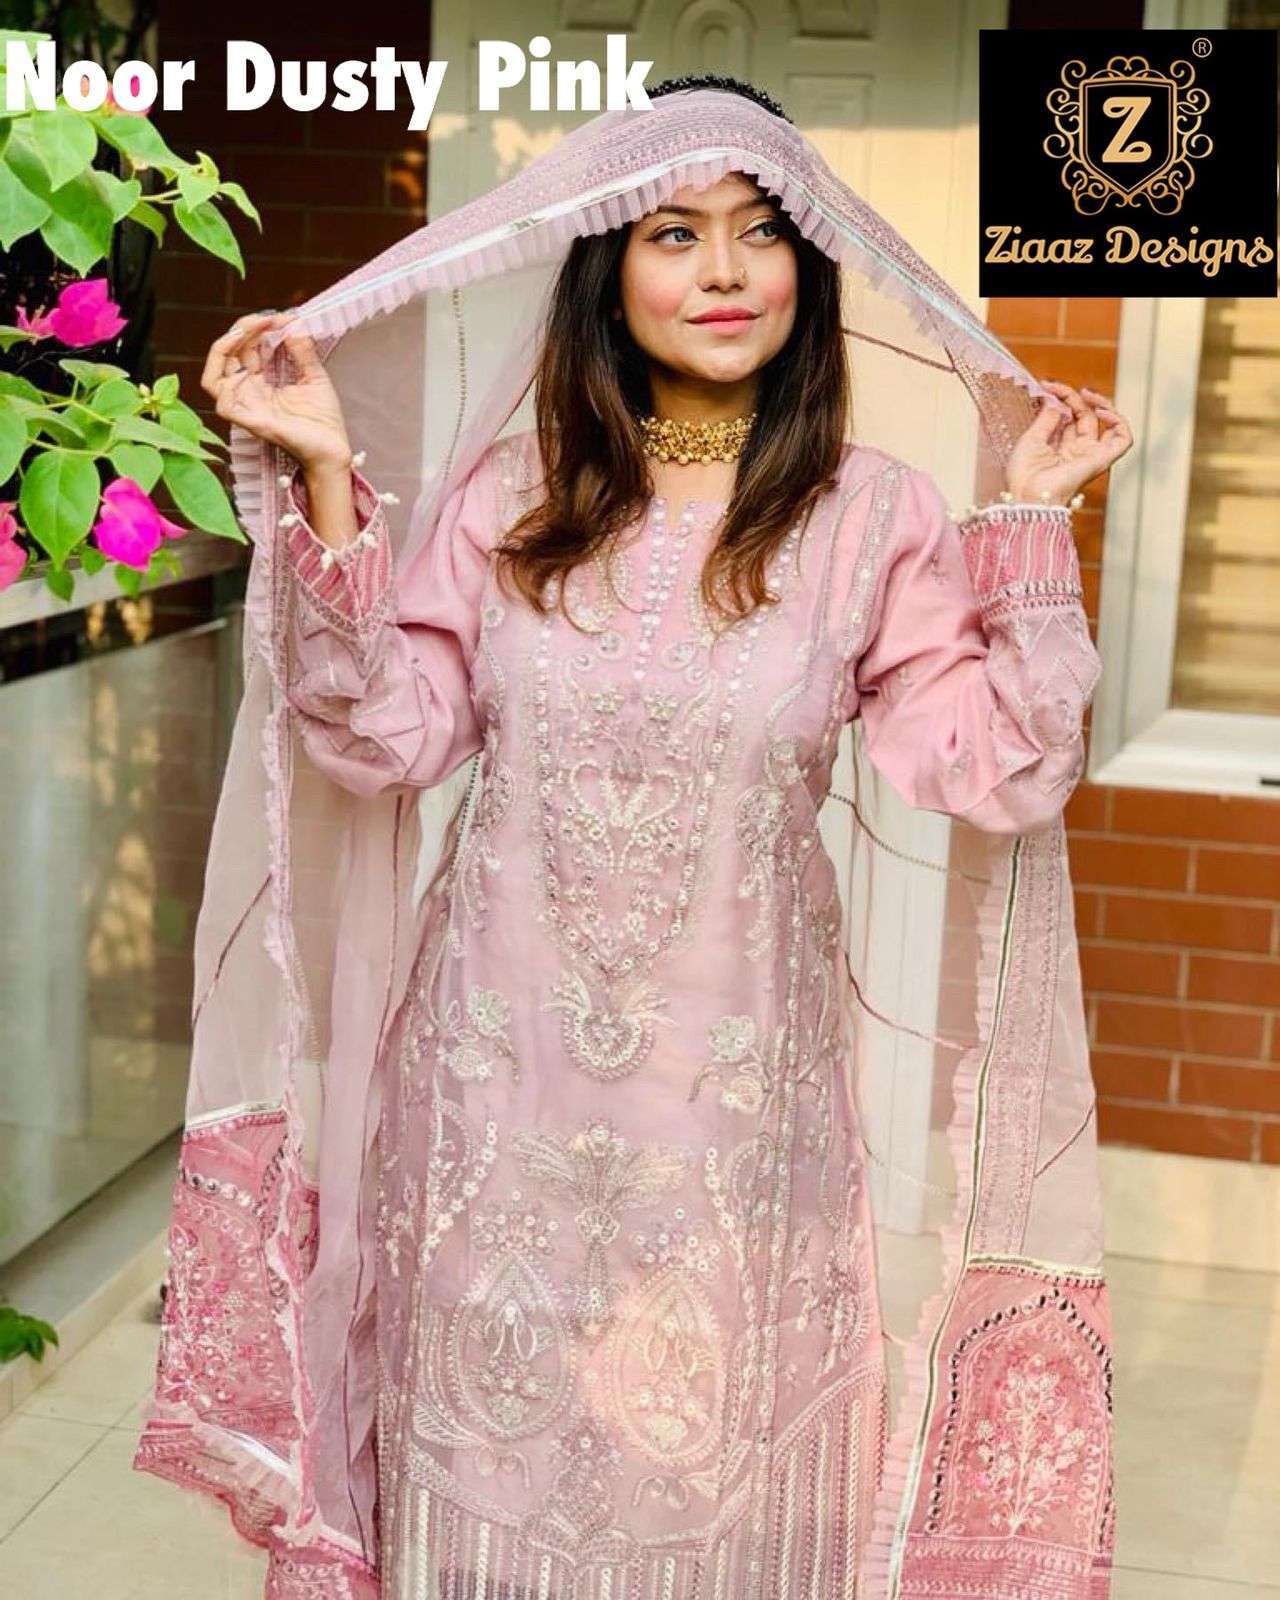 ziaaz designs noor dusty pink Organza pearl work suit